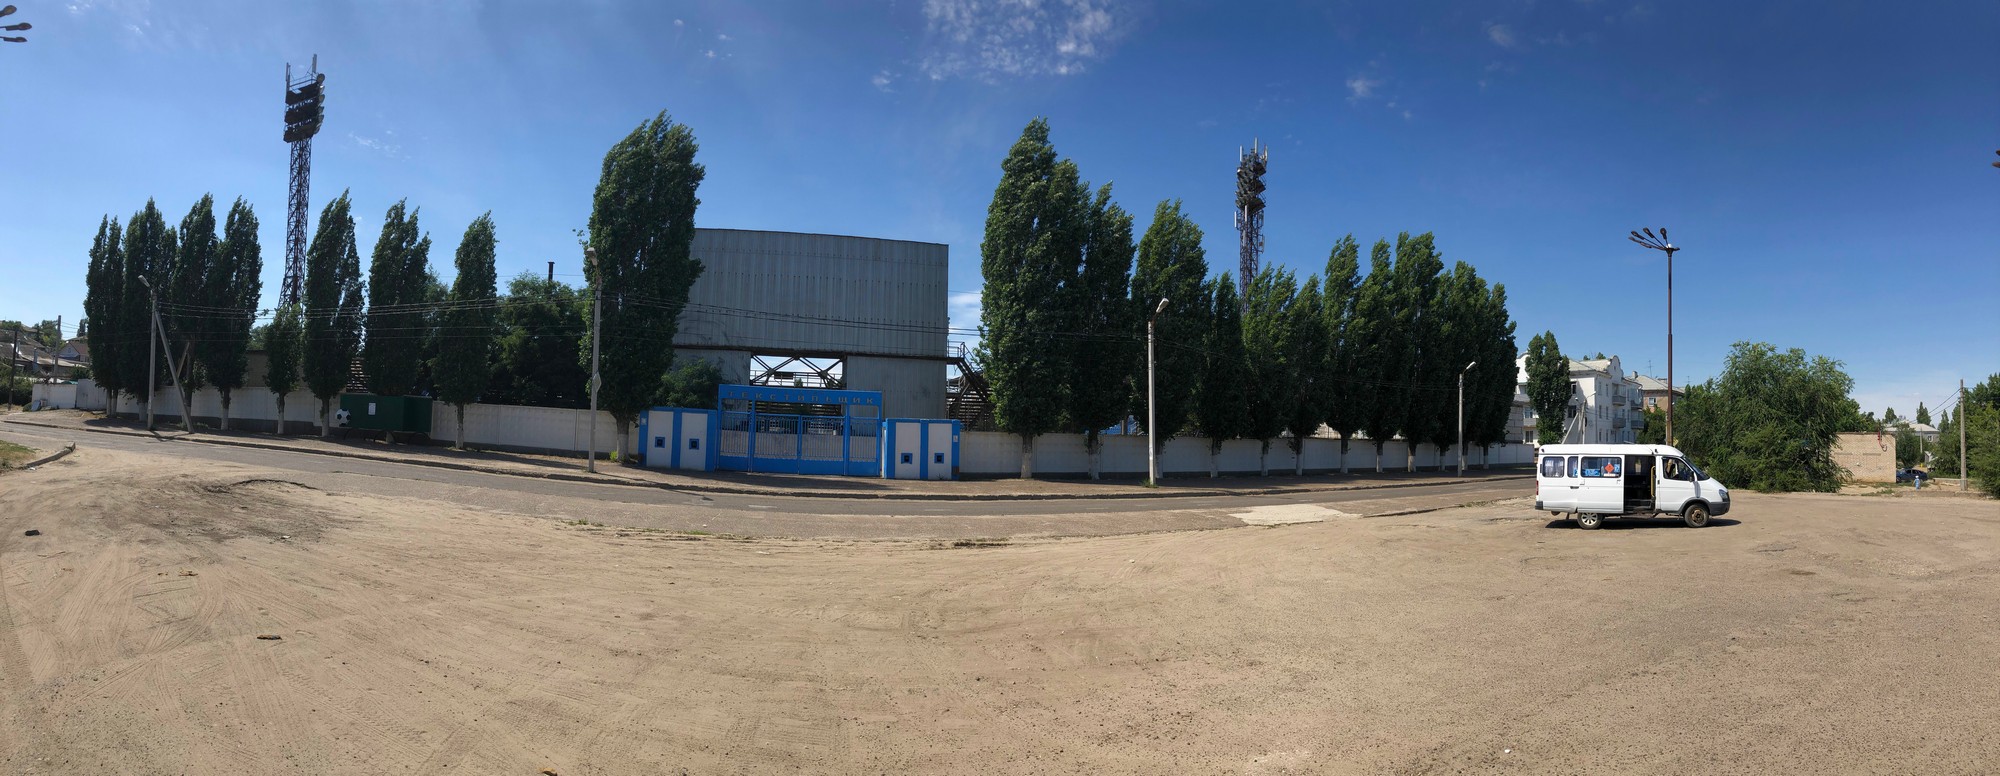 Камышин (08.07.2019)